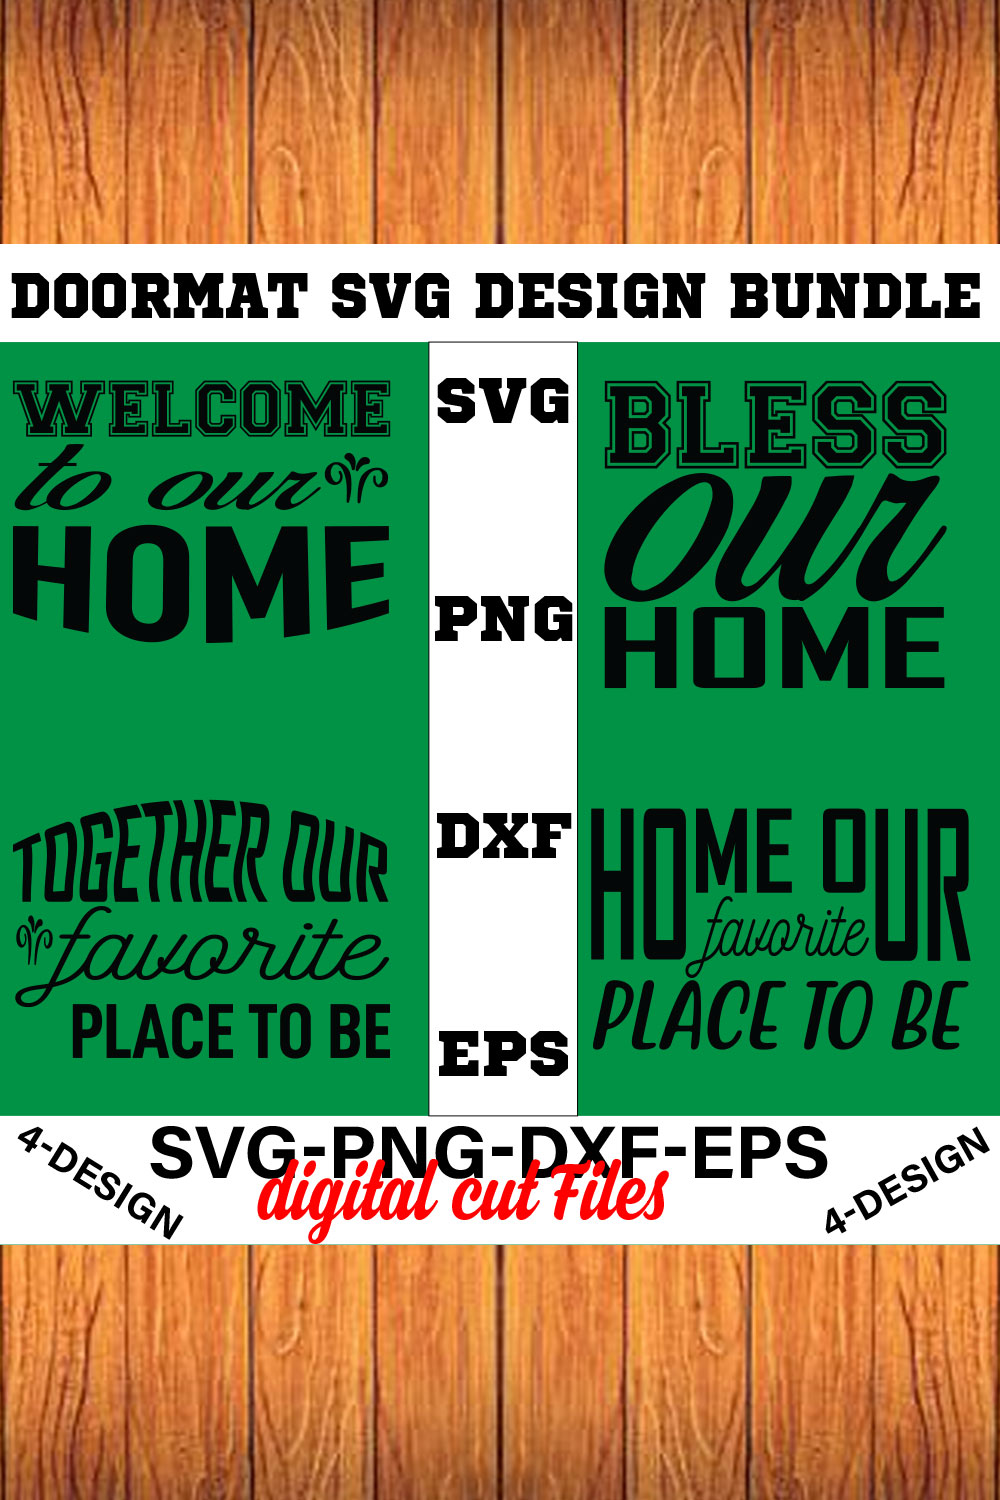 Doormat Quote Designs SVG Cut File Bundle for Cricut Volume-02 pinterest preview image.